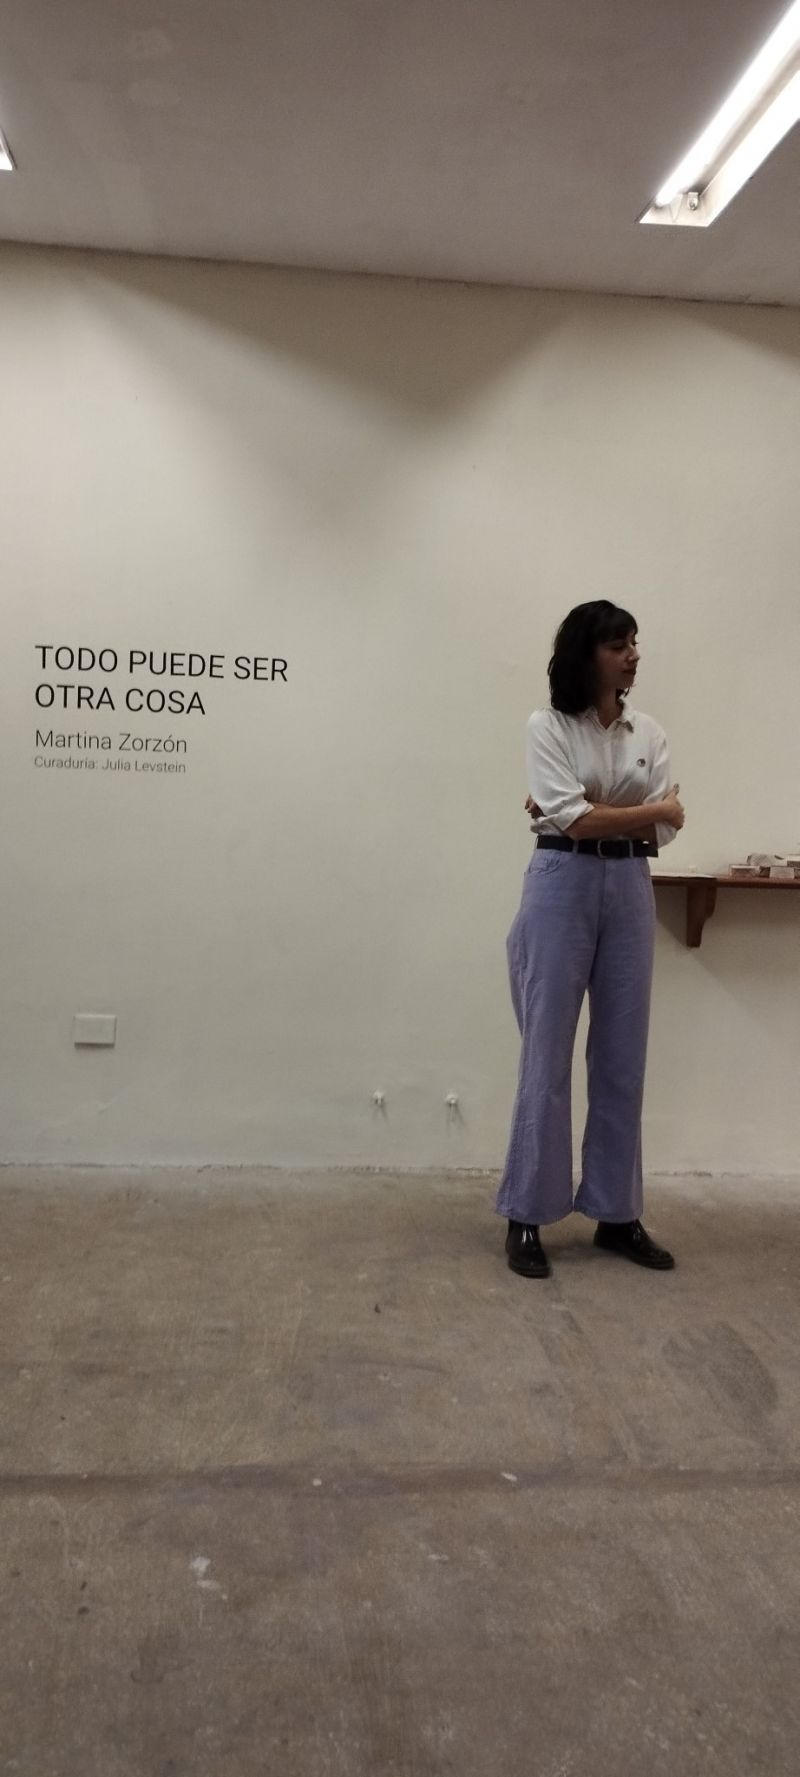 Visita guiada a cargo de Martina Zorzón y Julia Levstein